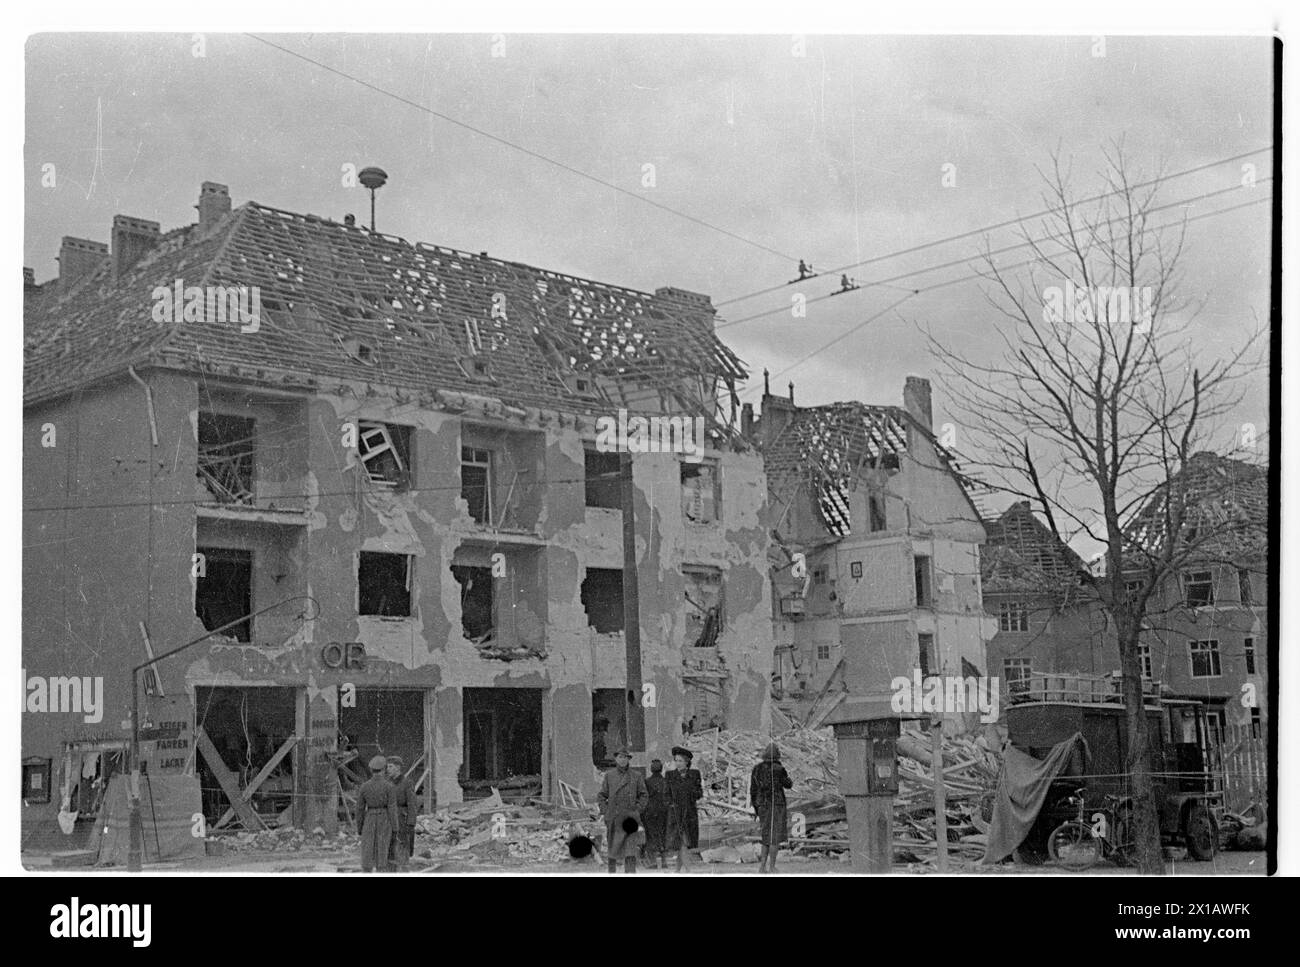 Trümmer und Ruinen von Häusern, Zerstörung nach schweren Bombenangriffen, 1944 - 19440101 PD1656 - Rechteinfo: Rights Managed (RM) Stockfoto